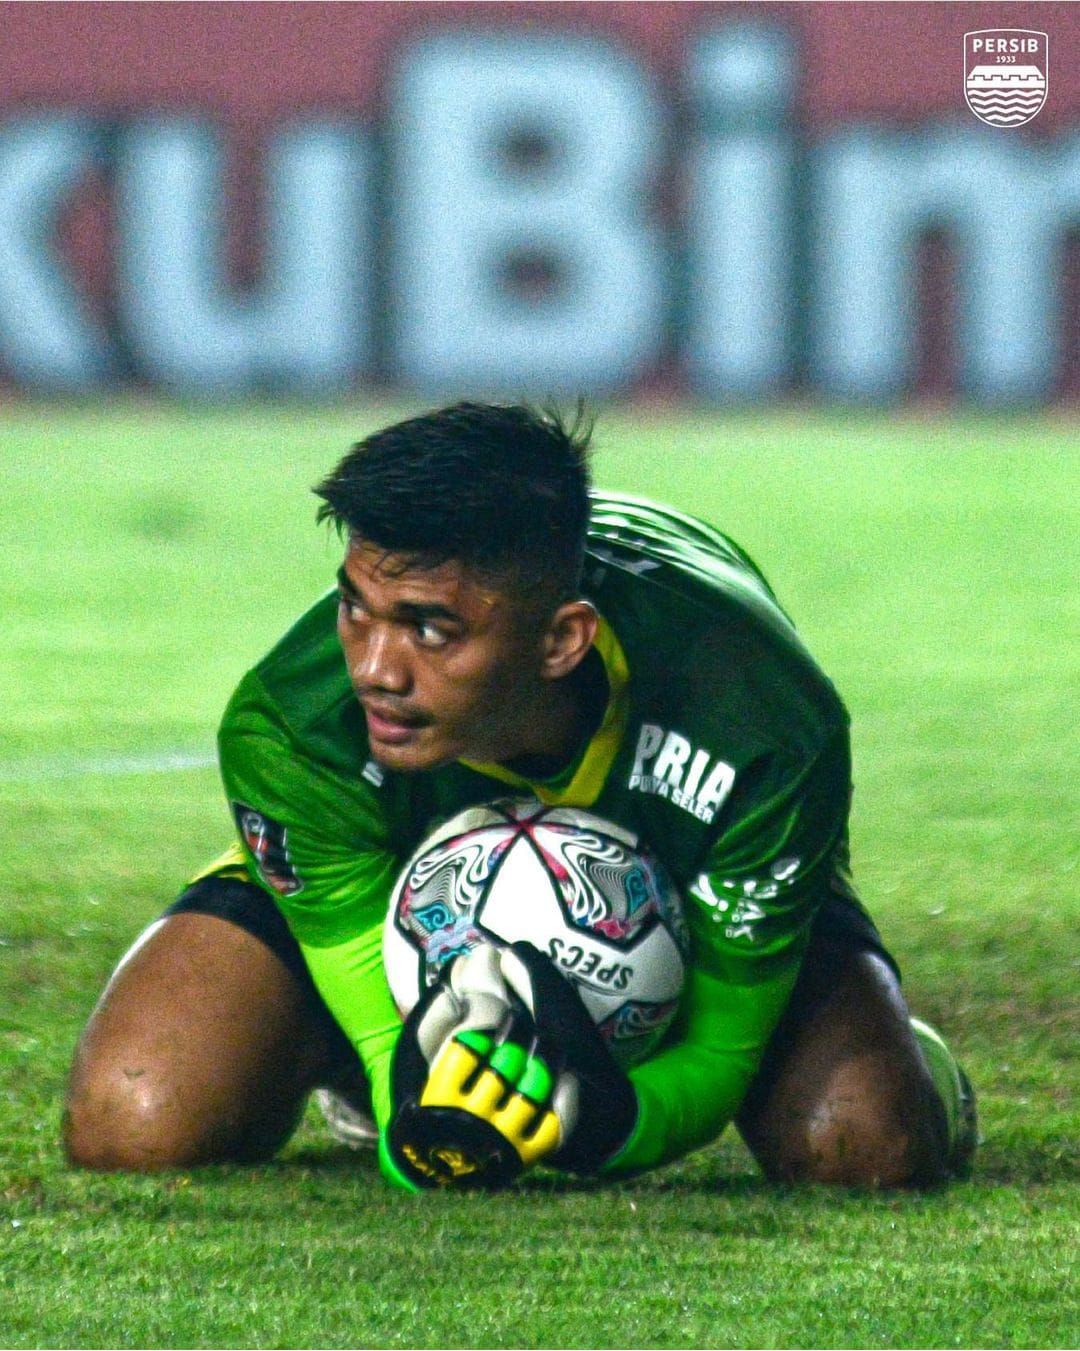 Fitrul Bertekad untuk Tingkatkan Performa saat Perkuat Persib Bandung di Piala Pra musim dan Liga 1 Indonesia